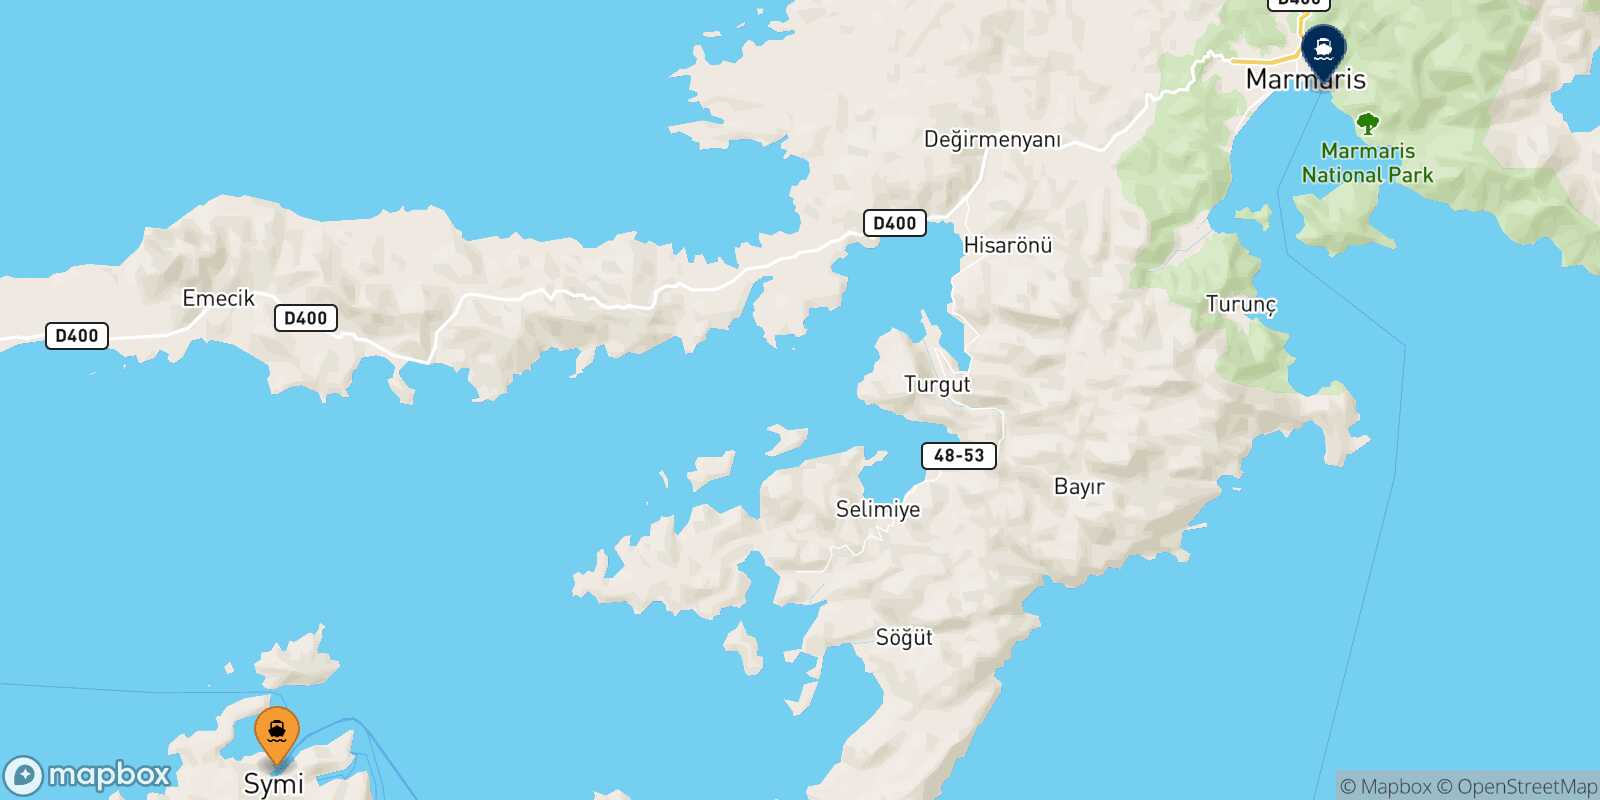 Mapa de la ruta Symi Marmaris